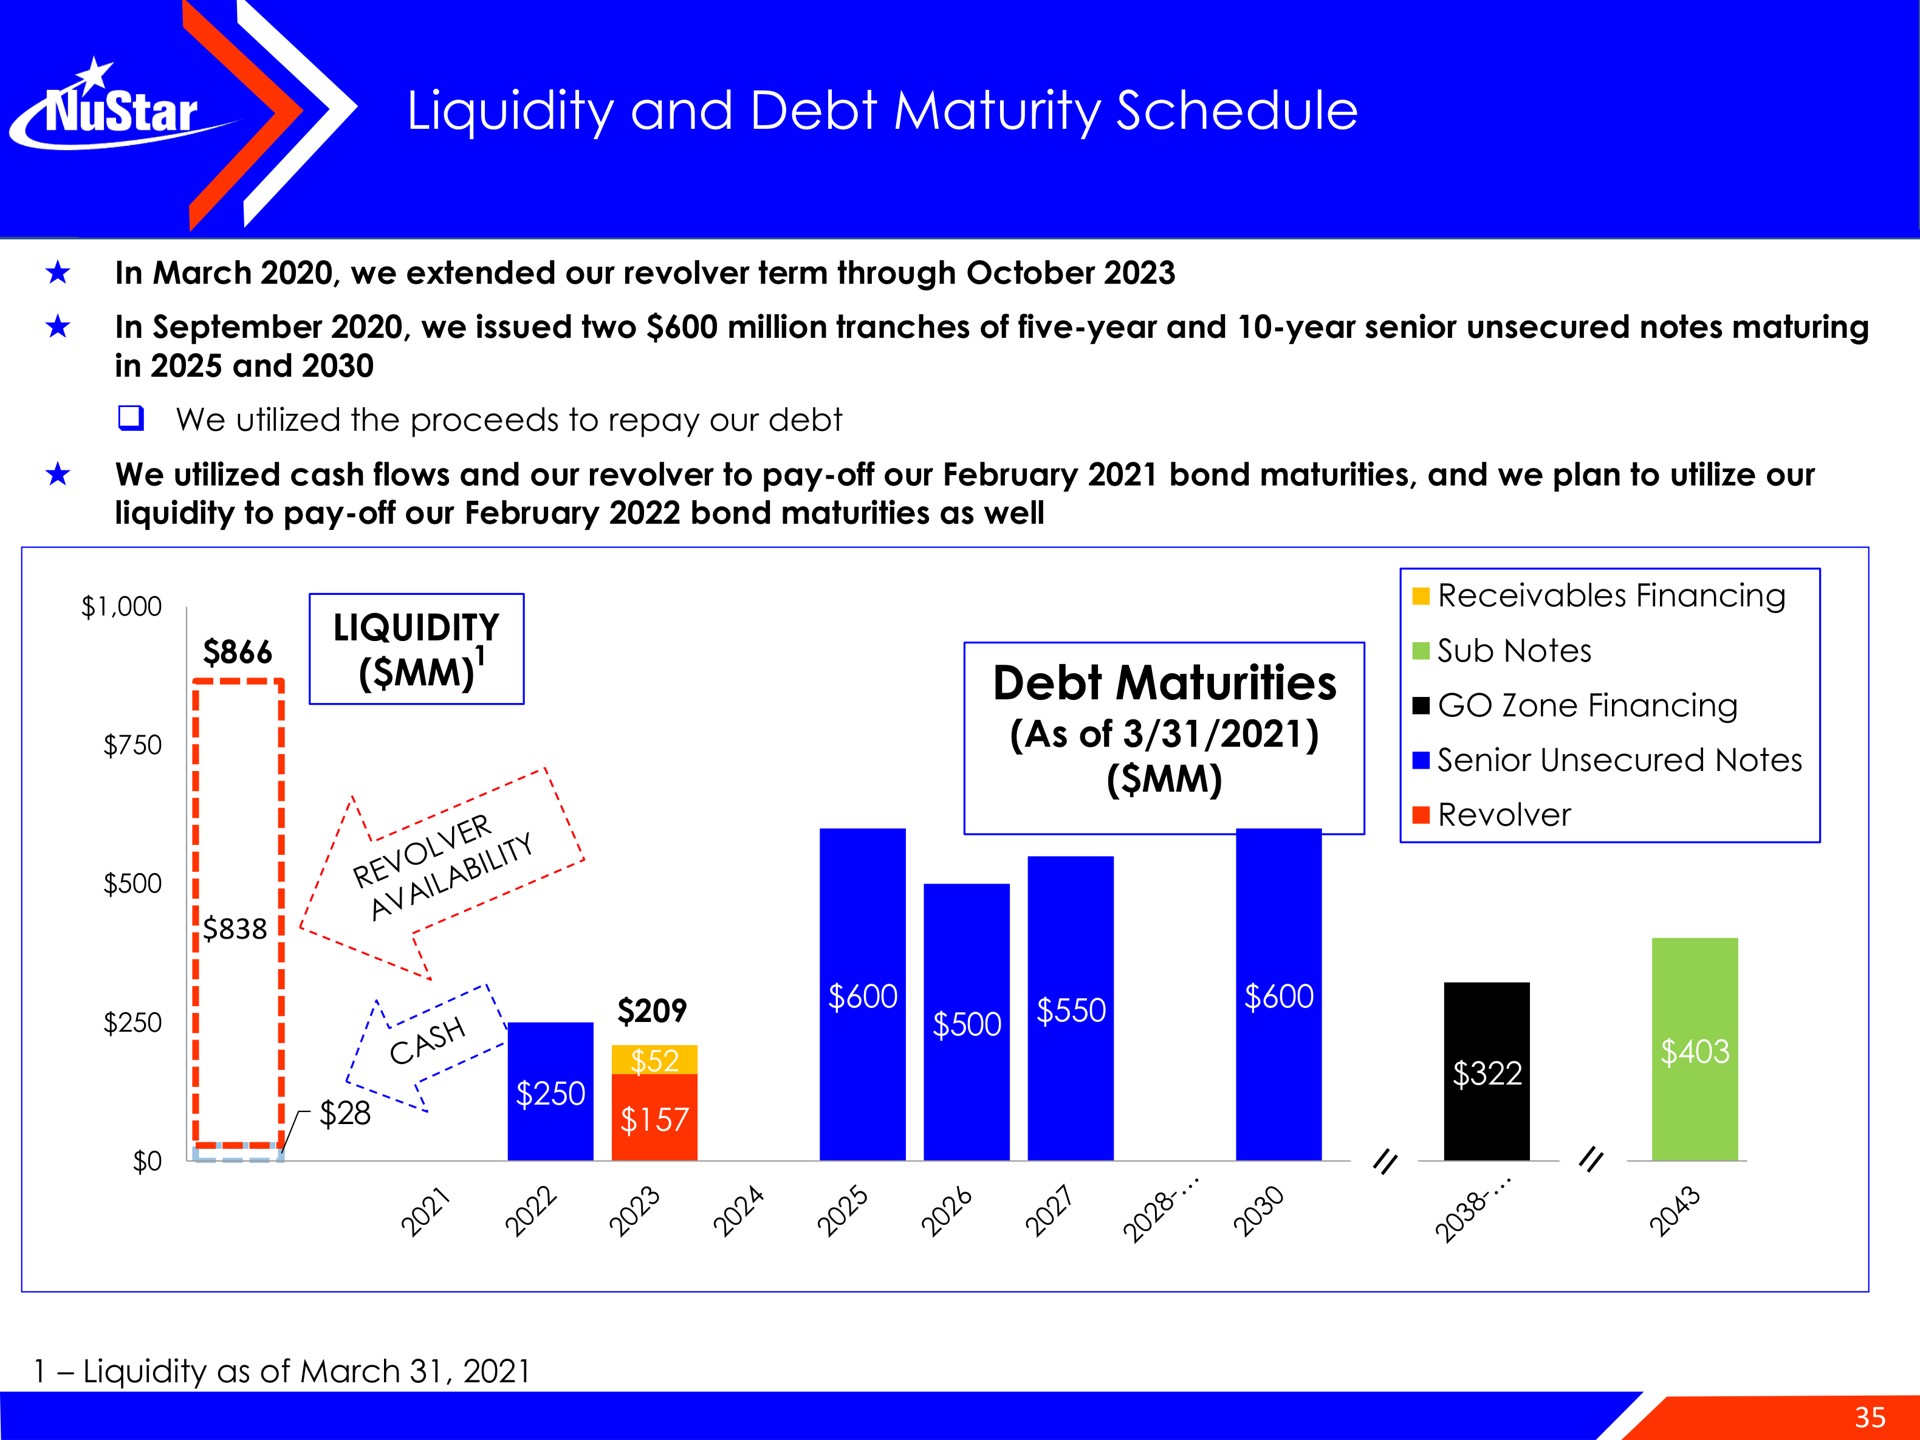 liquidity and debt maturity schedule debt maturities | NuStar Energy